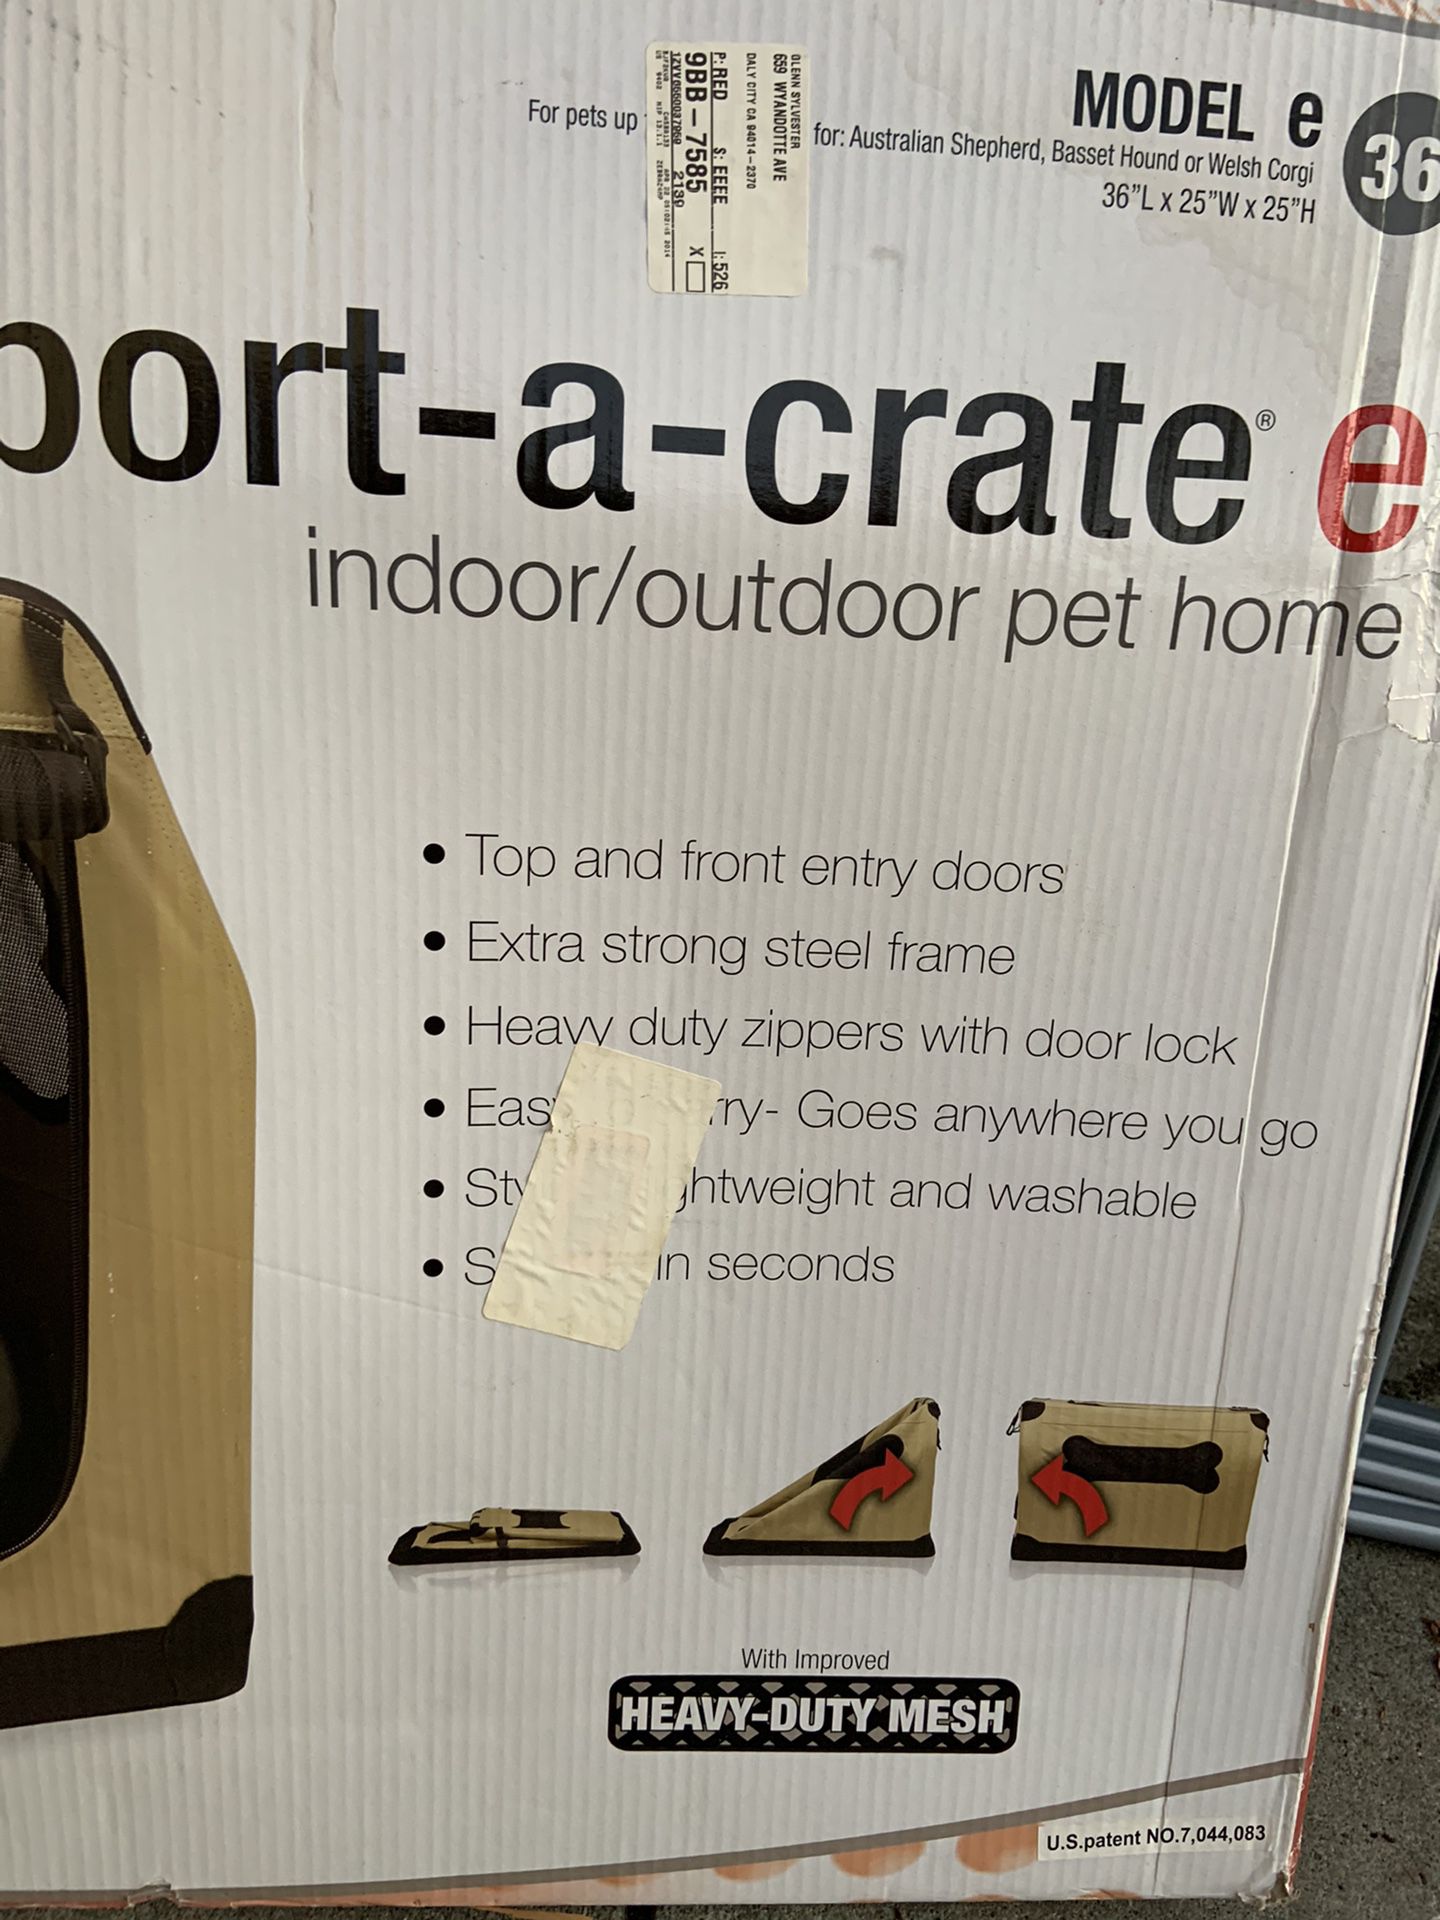 Indoor/outdoor dog crate